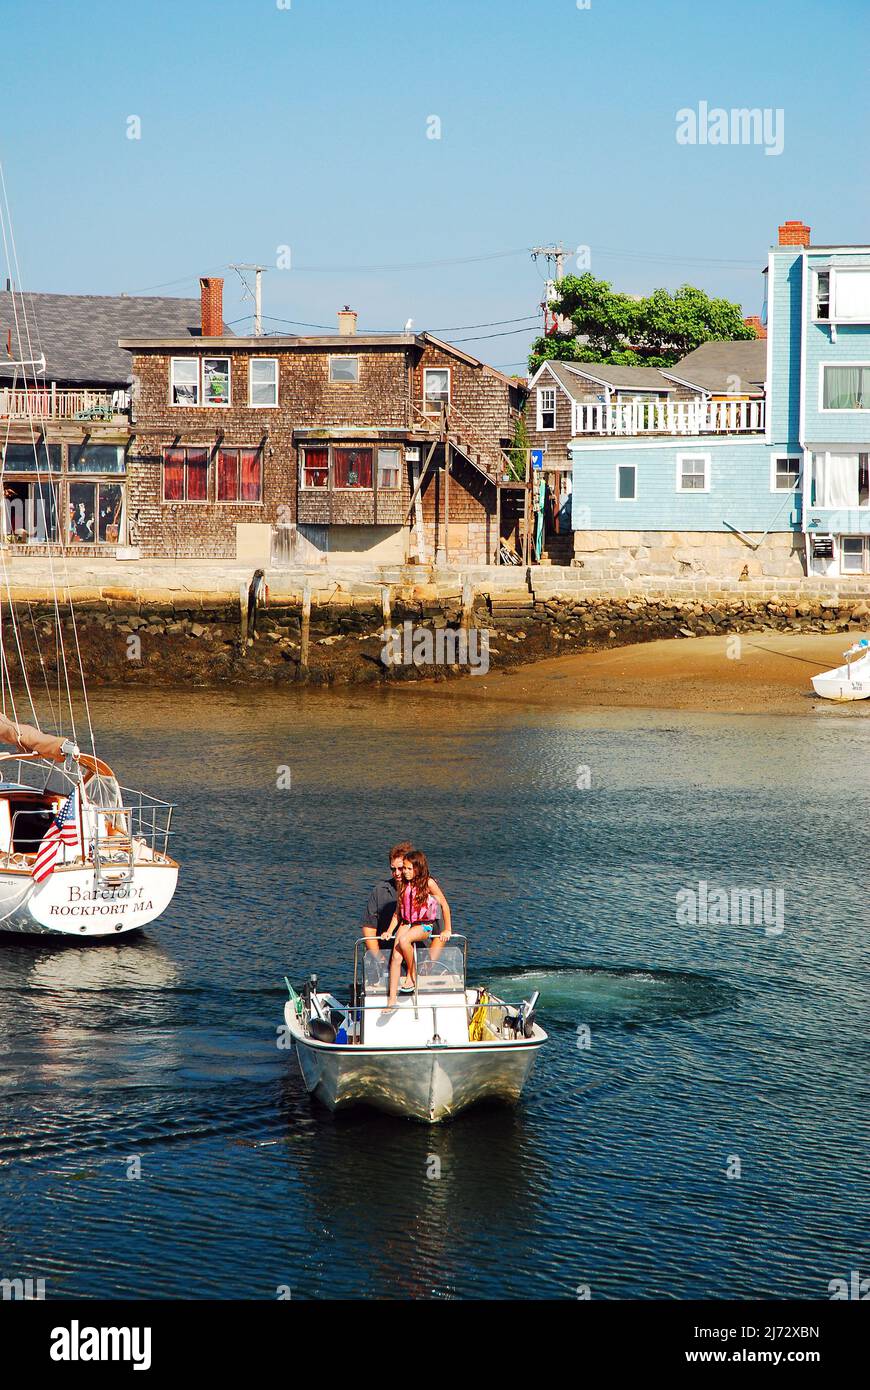 Un père et une fille sortent du port sur un petit bateau lors d'une journée d'été calme à Rockport, Massachusetts Banque D'Images